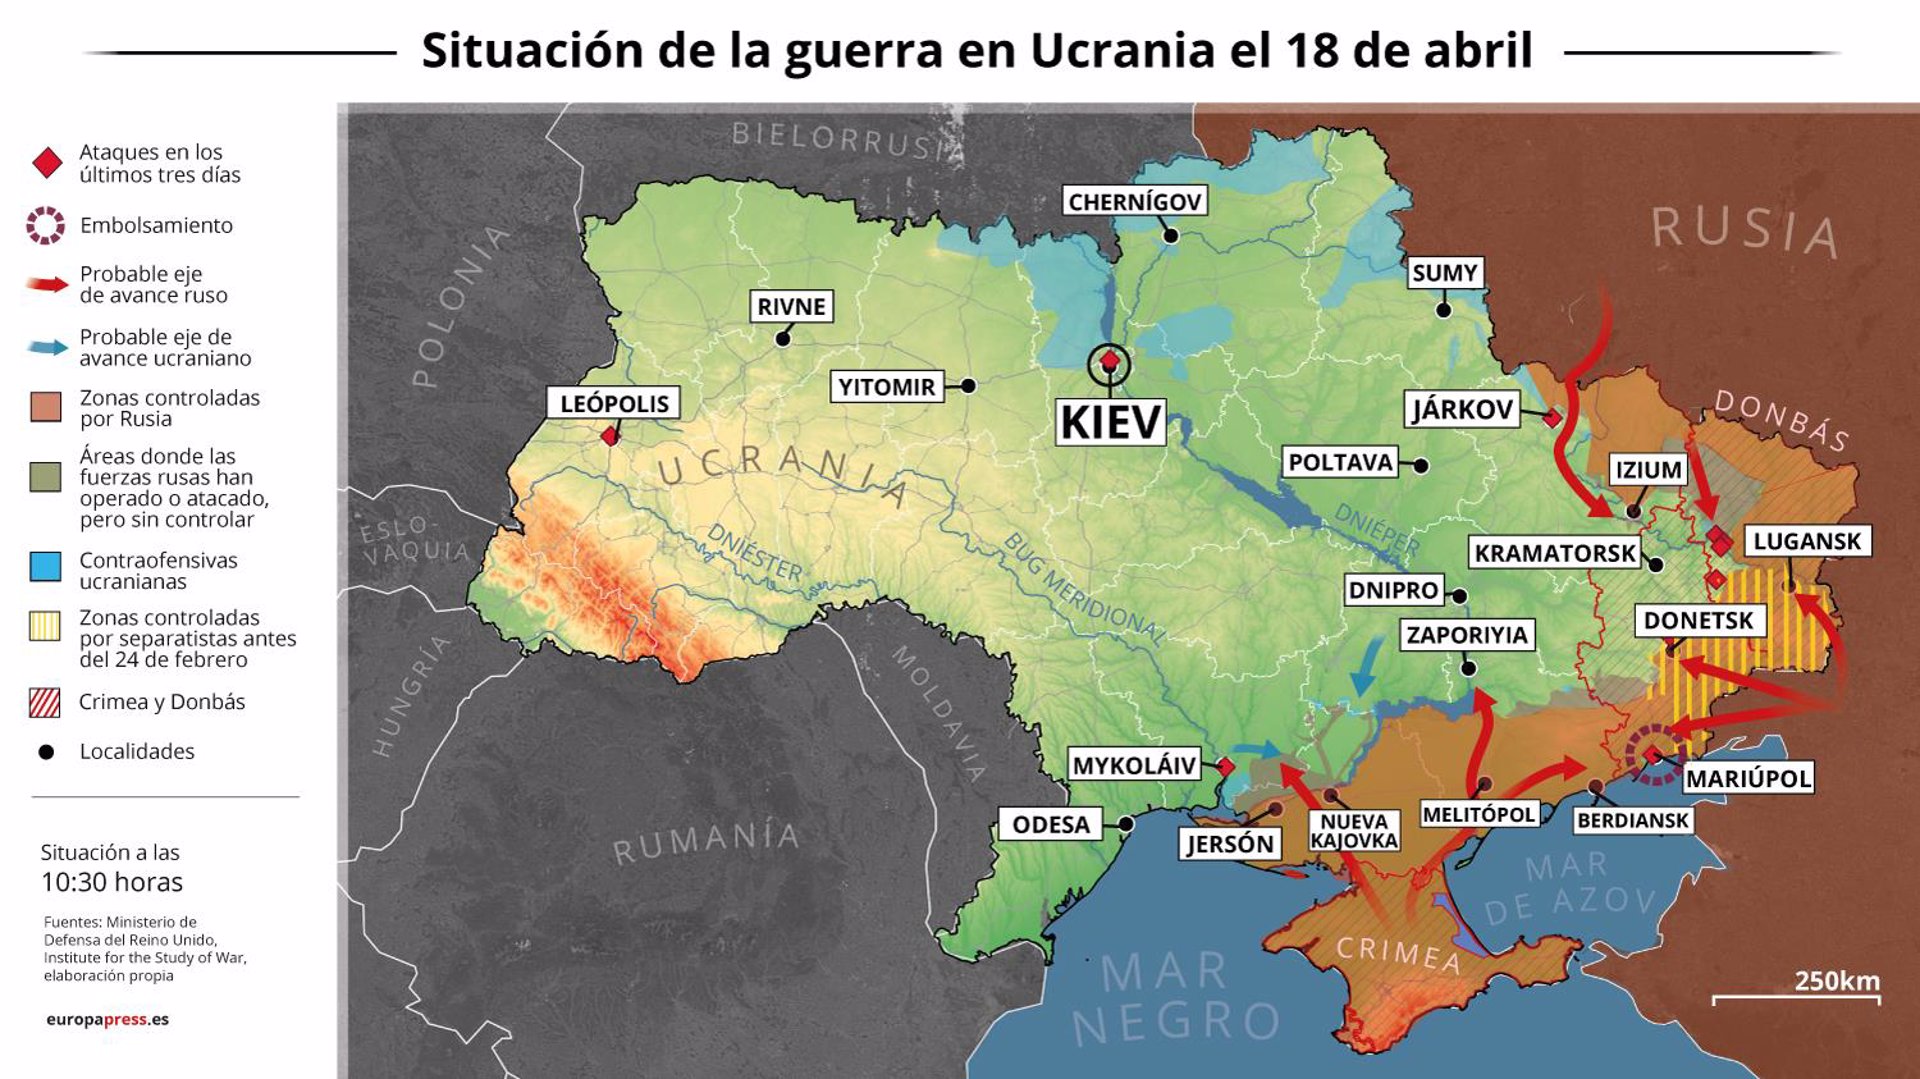 EpData.- Mapas y gráficos de la situación de la guerra en Ucrania